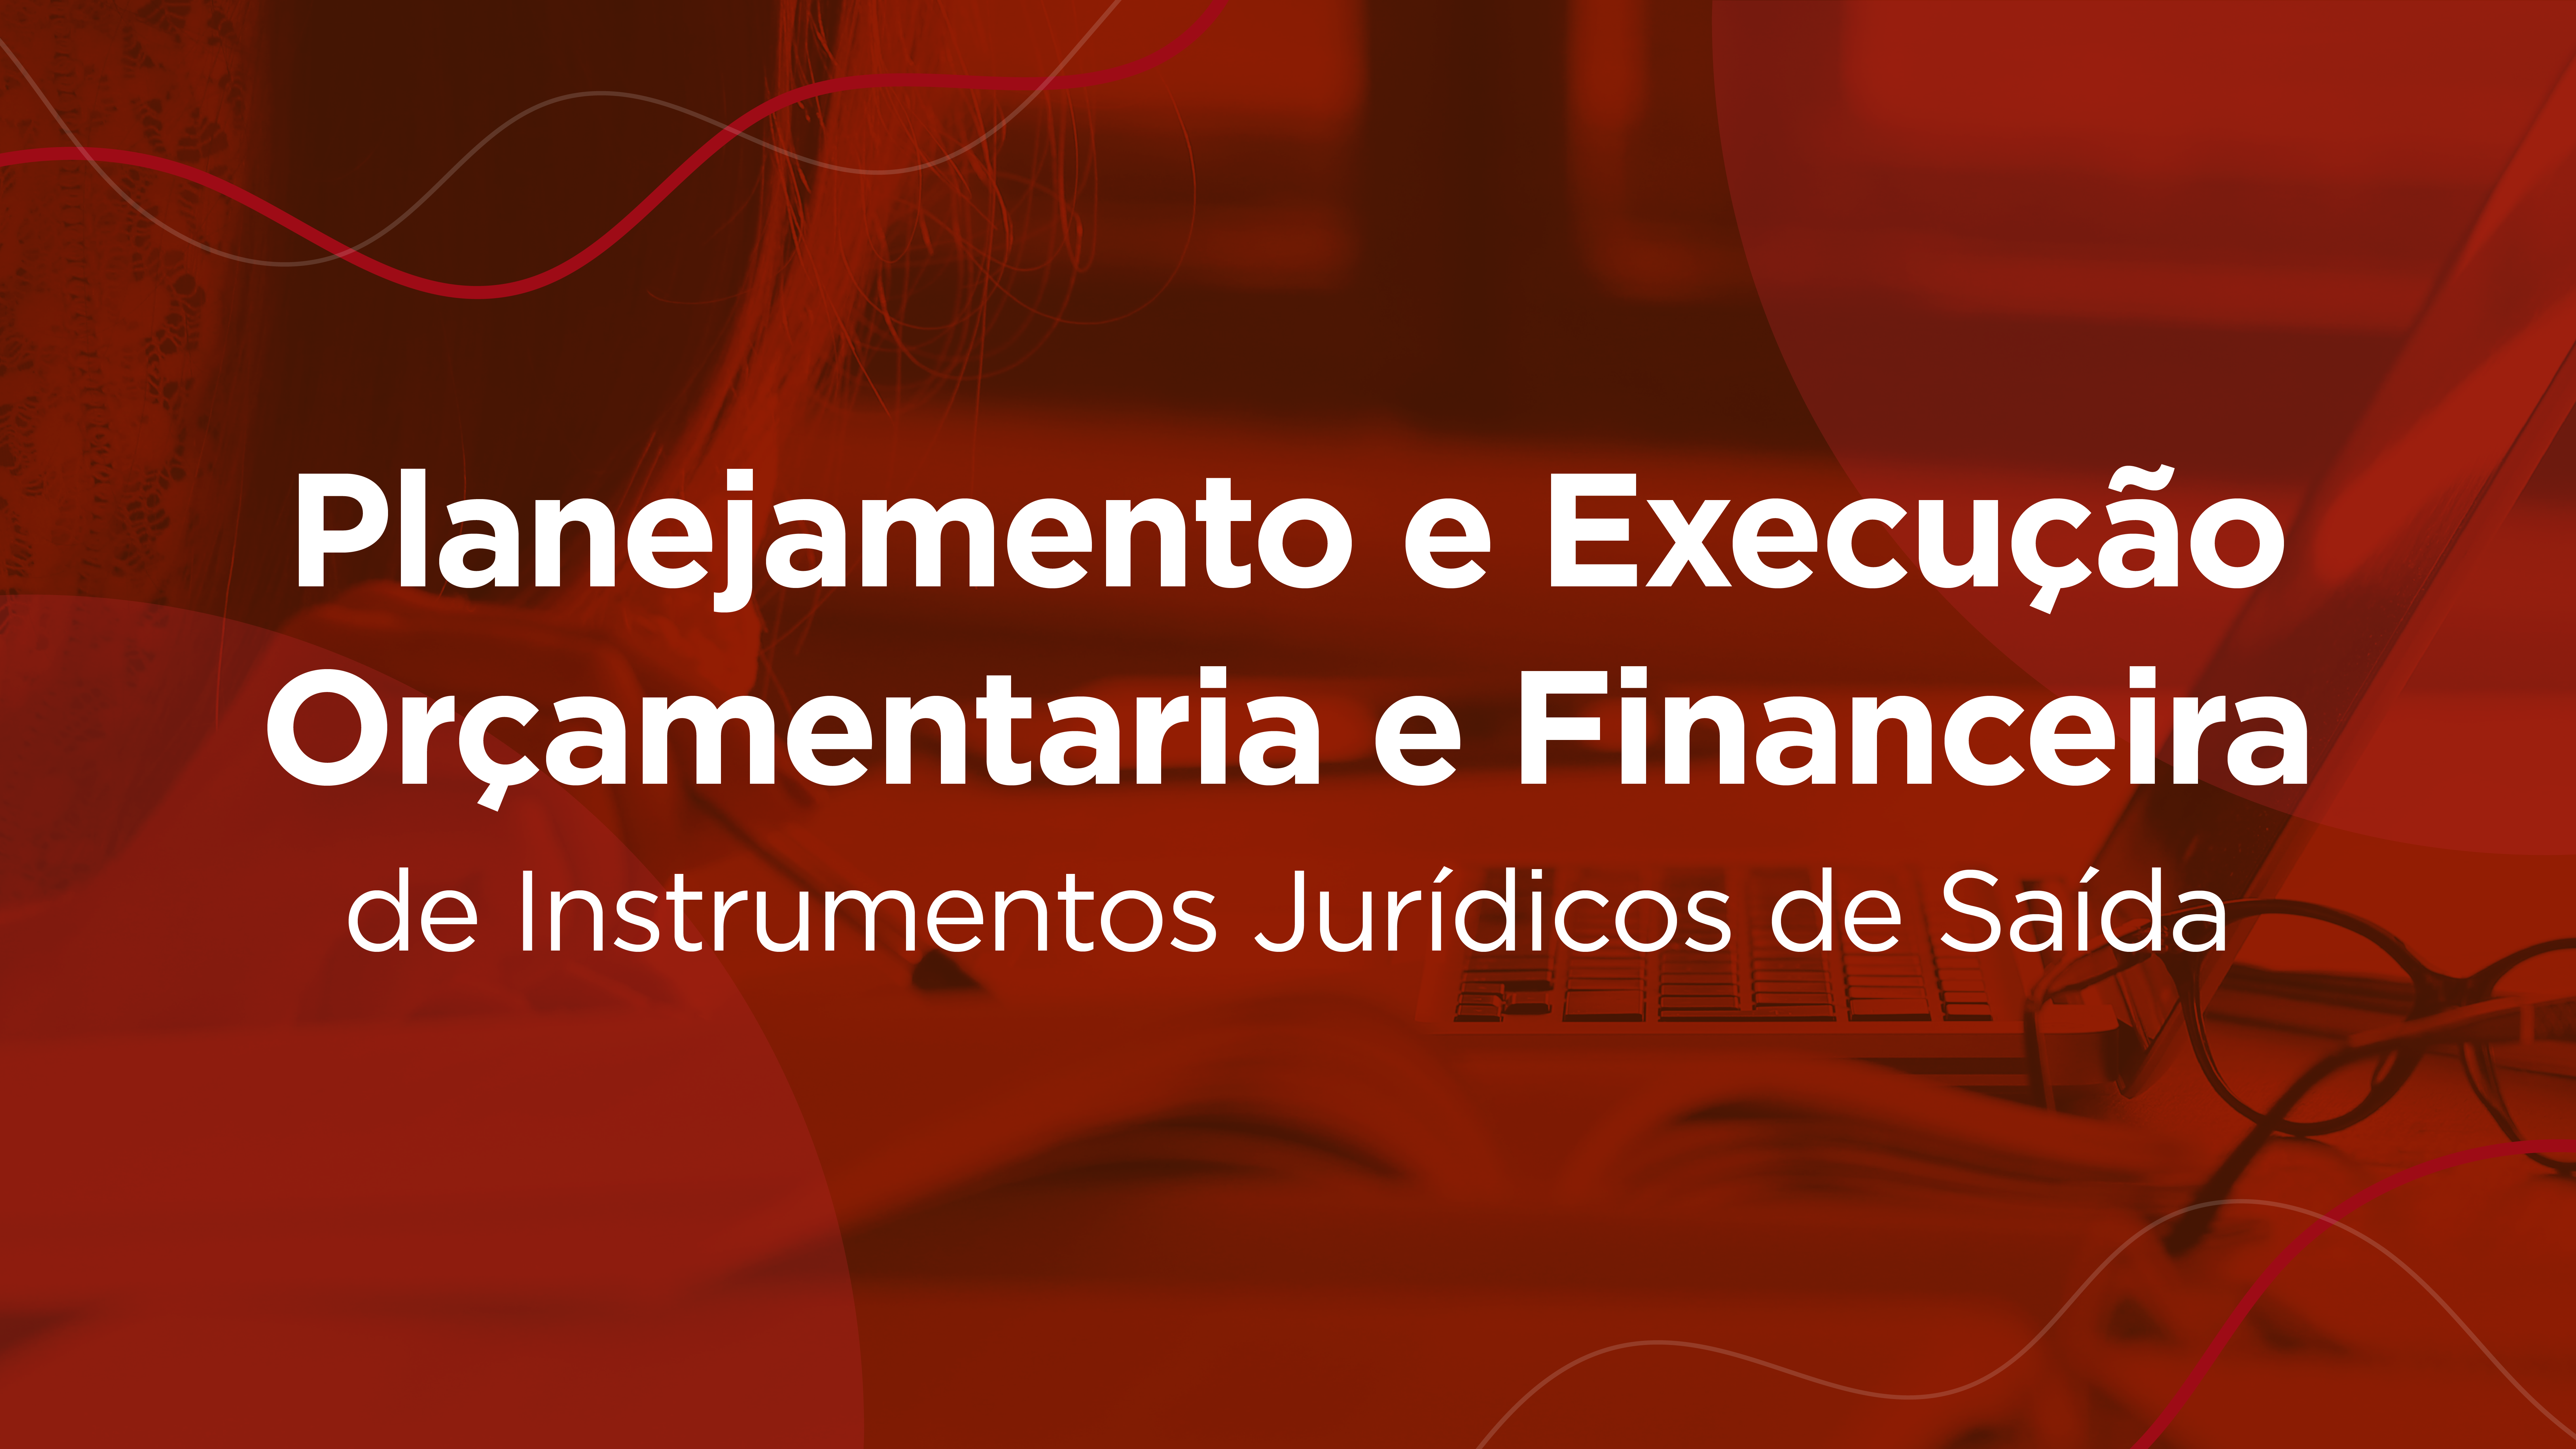 Planejamento e Execução Orçamentária e Financeira de Instrumentos Jurídicos de Saída 